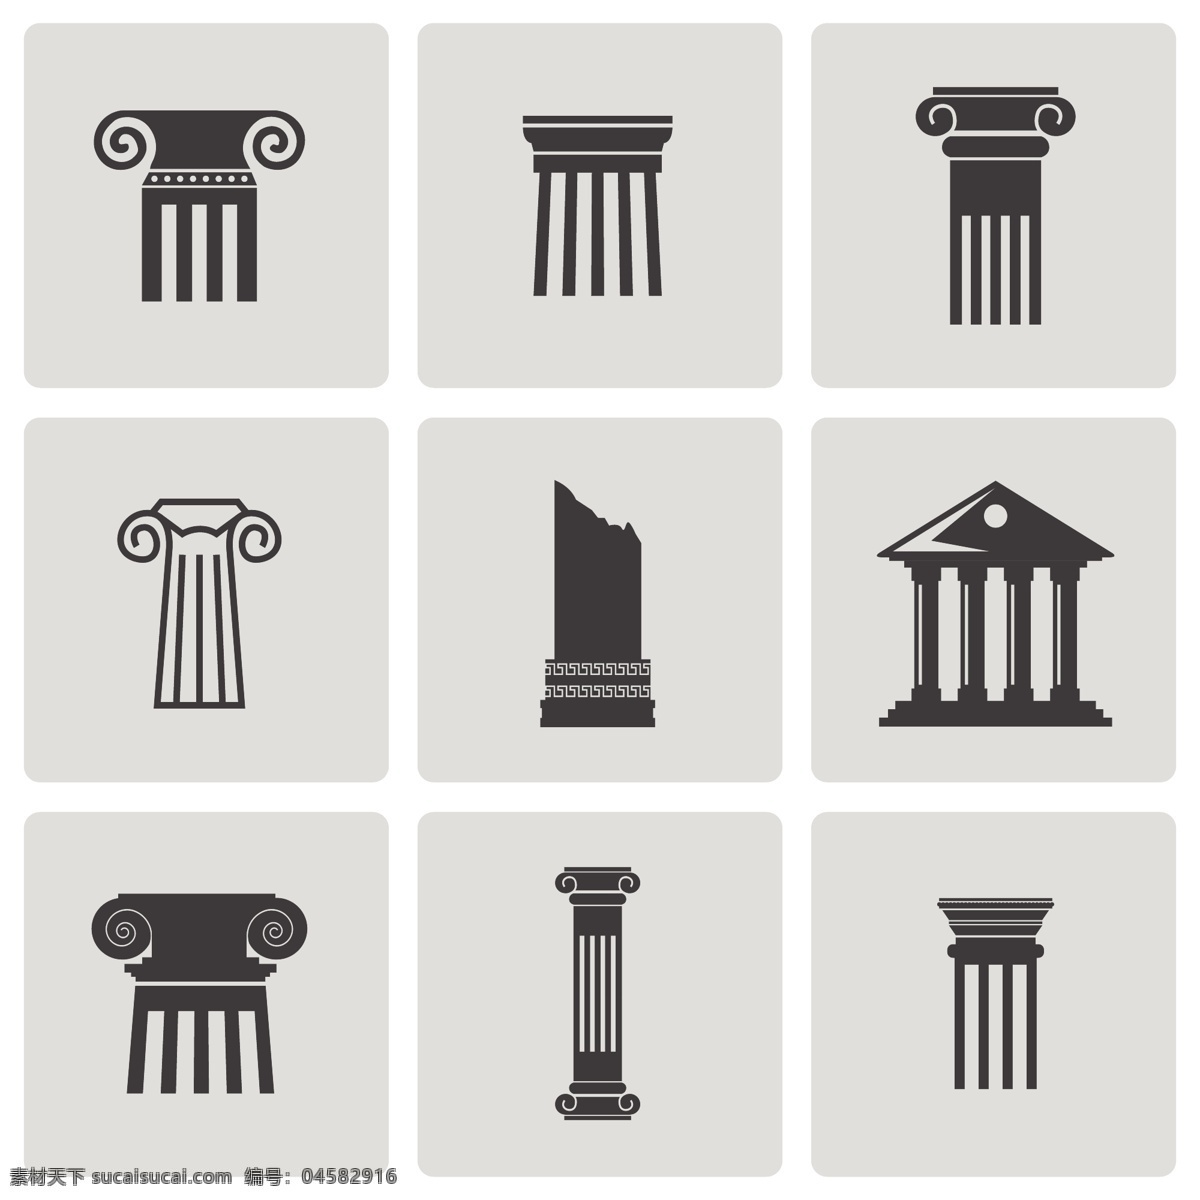 罗马柱 雕刻 环境设计 建筑材料 建筑设计 欧洲 石柱 石刻 手绘 矢量 装饰素材